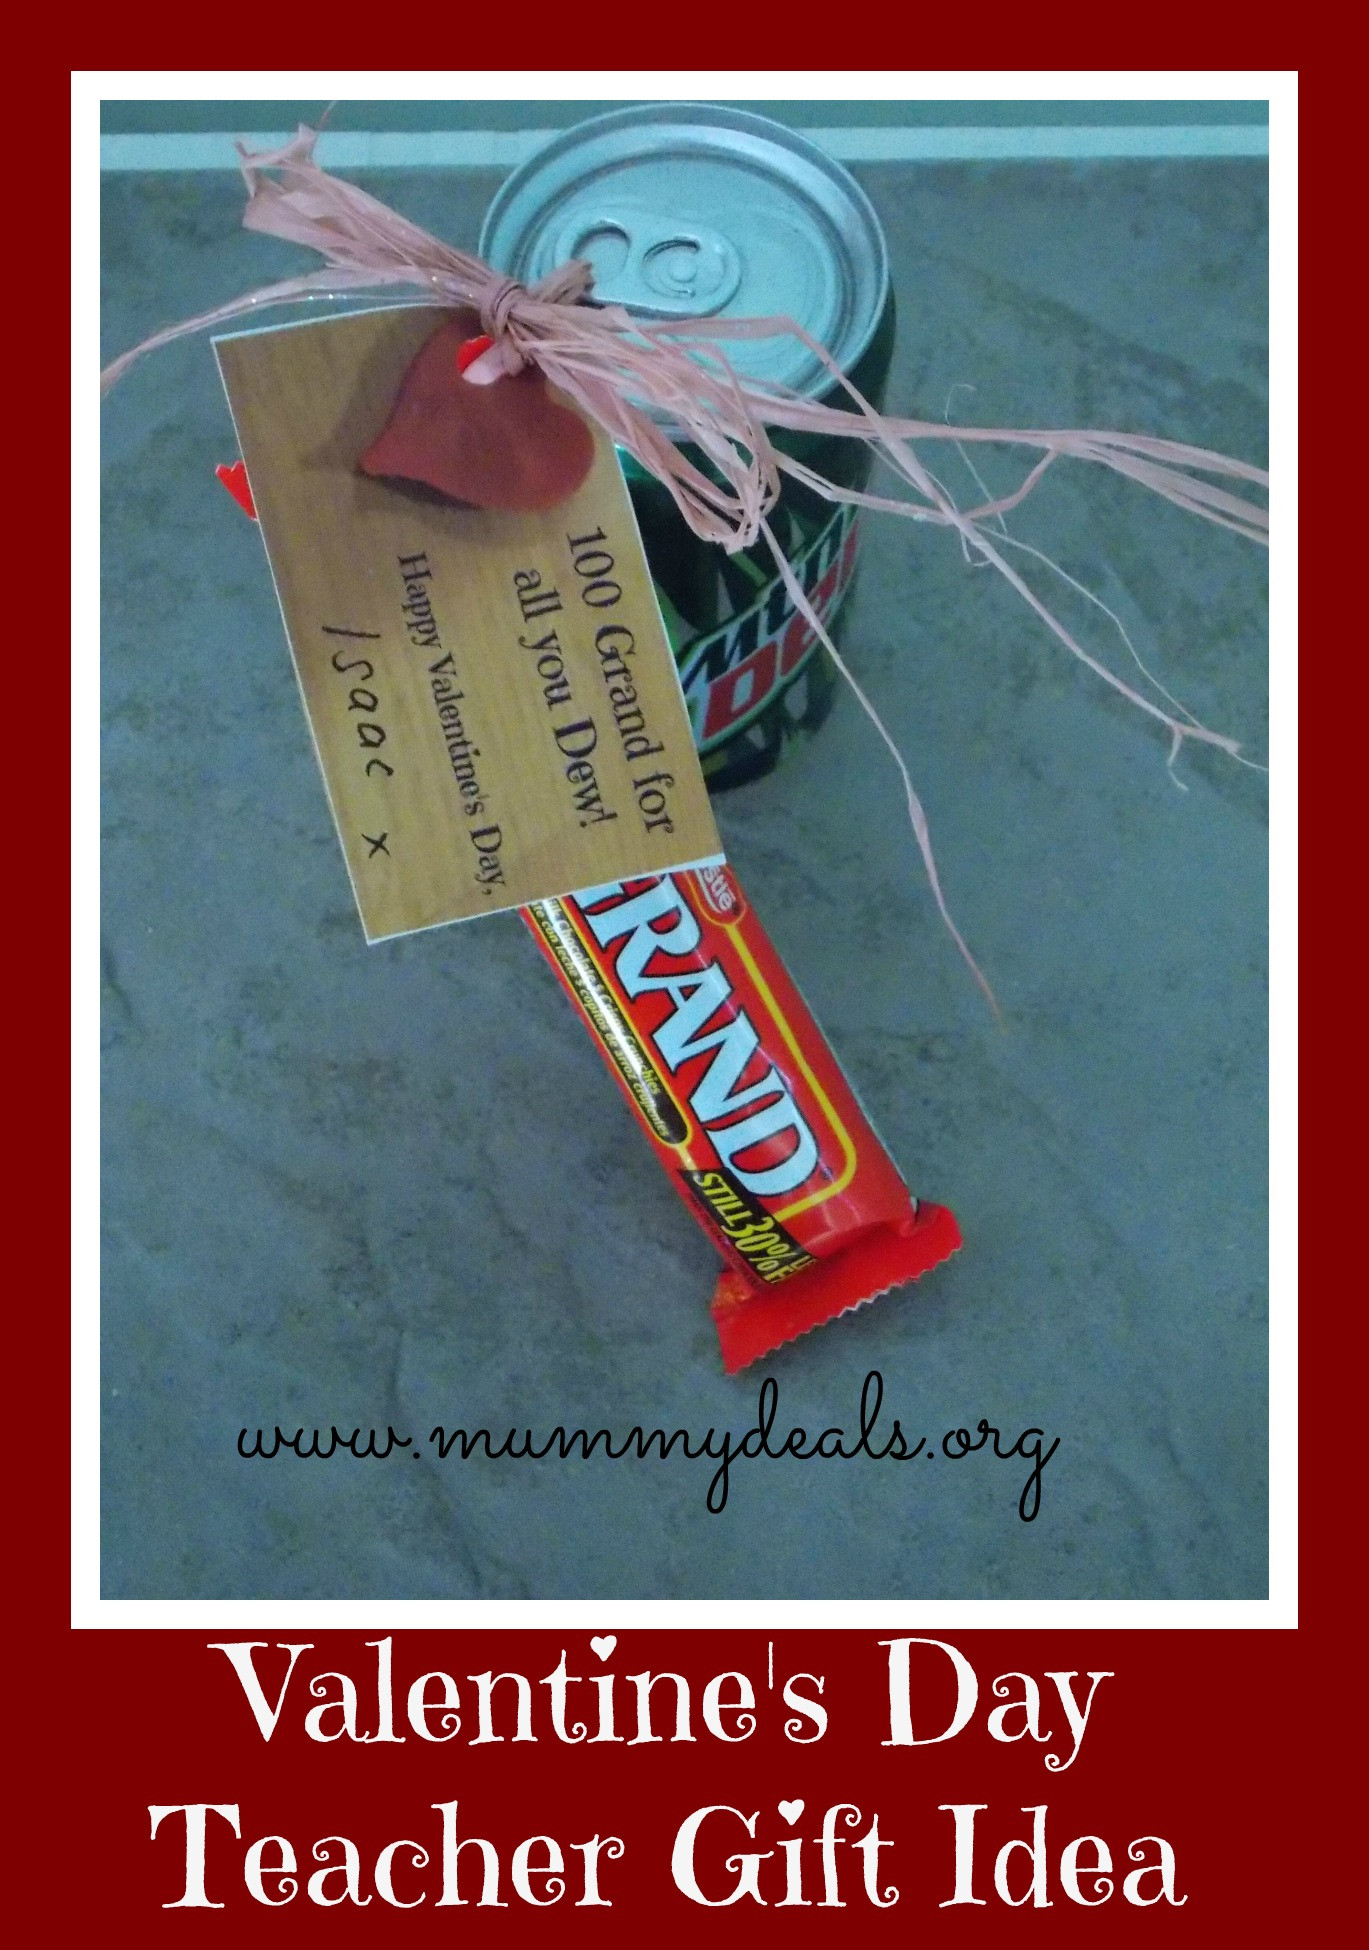 Teacher Valentine Gift Ideas
 6 Valentine s Day Teacher Gift Ideas Mummy Deals